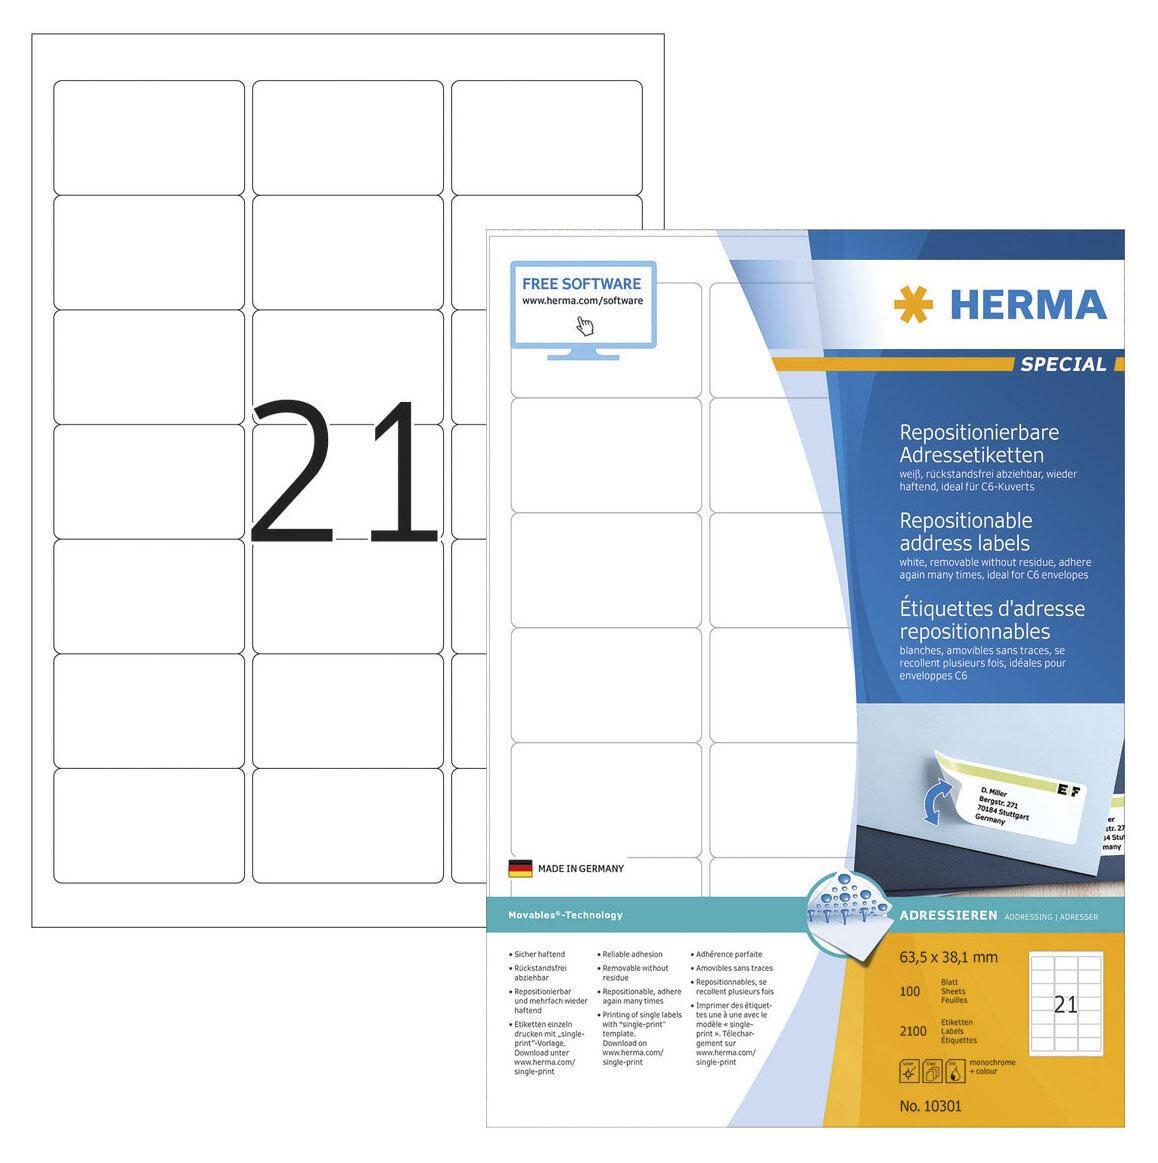 HERMA Adress-Etiketten 10301 63,5 x 38,1 mm weiß von HERMA